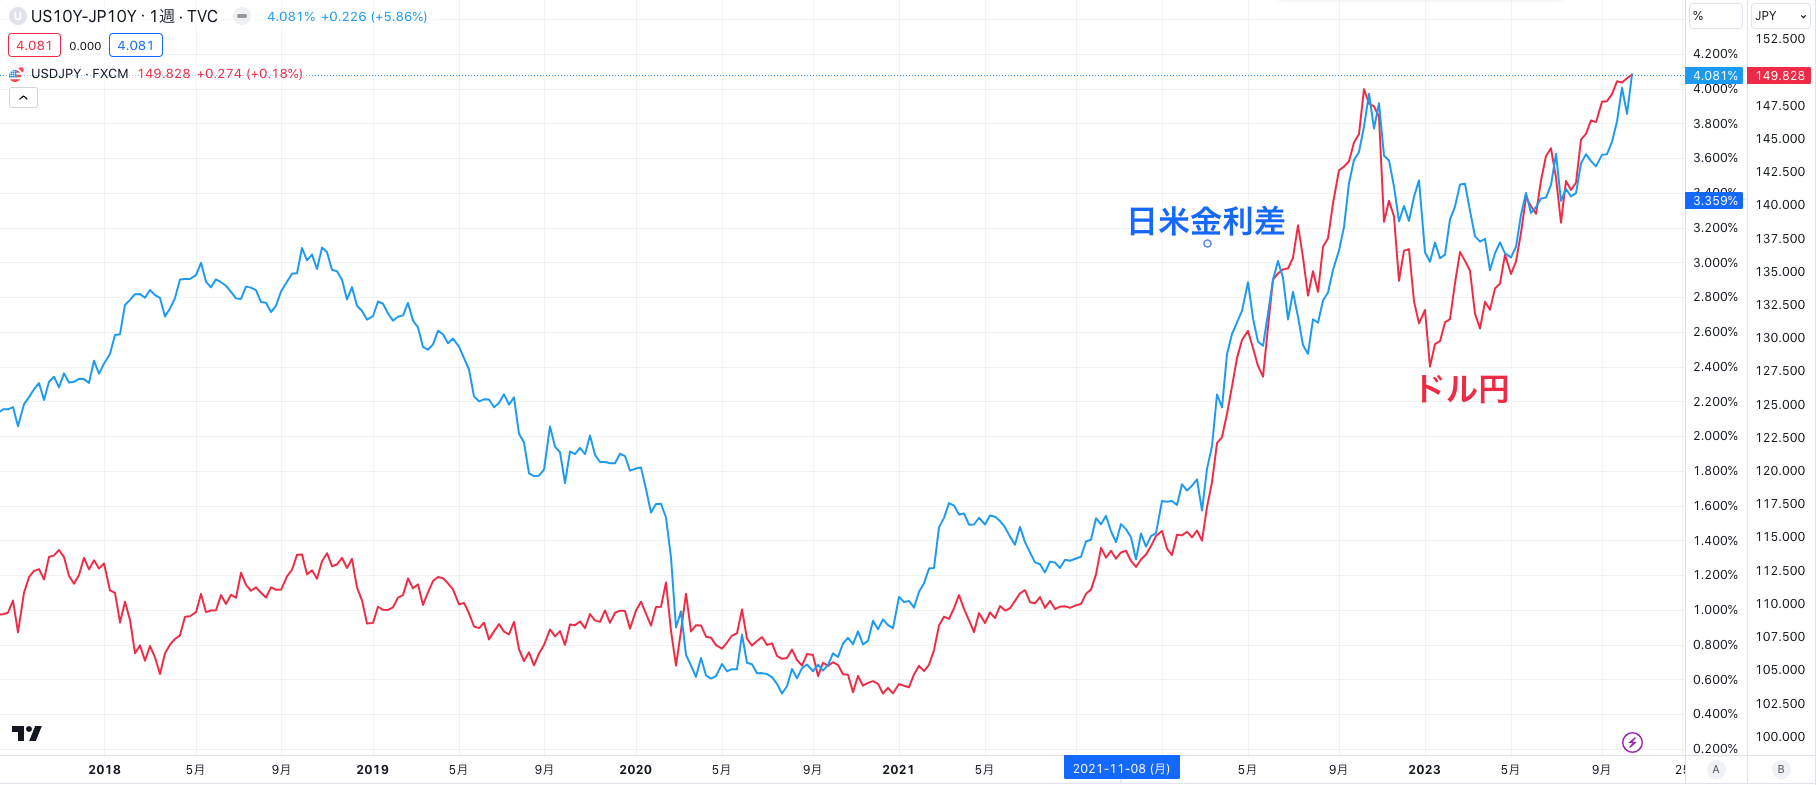 ドル円は日米金利差に連動する形で上昇